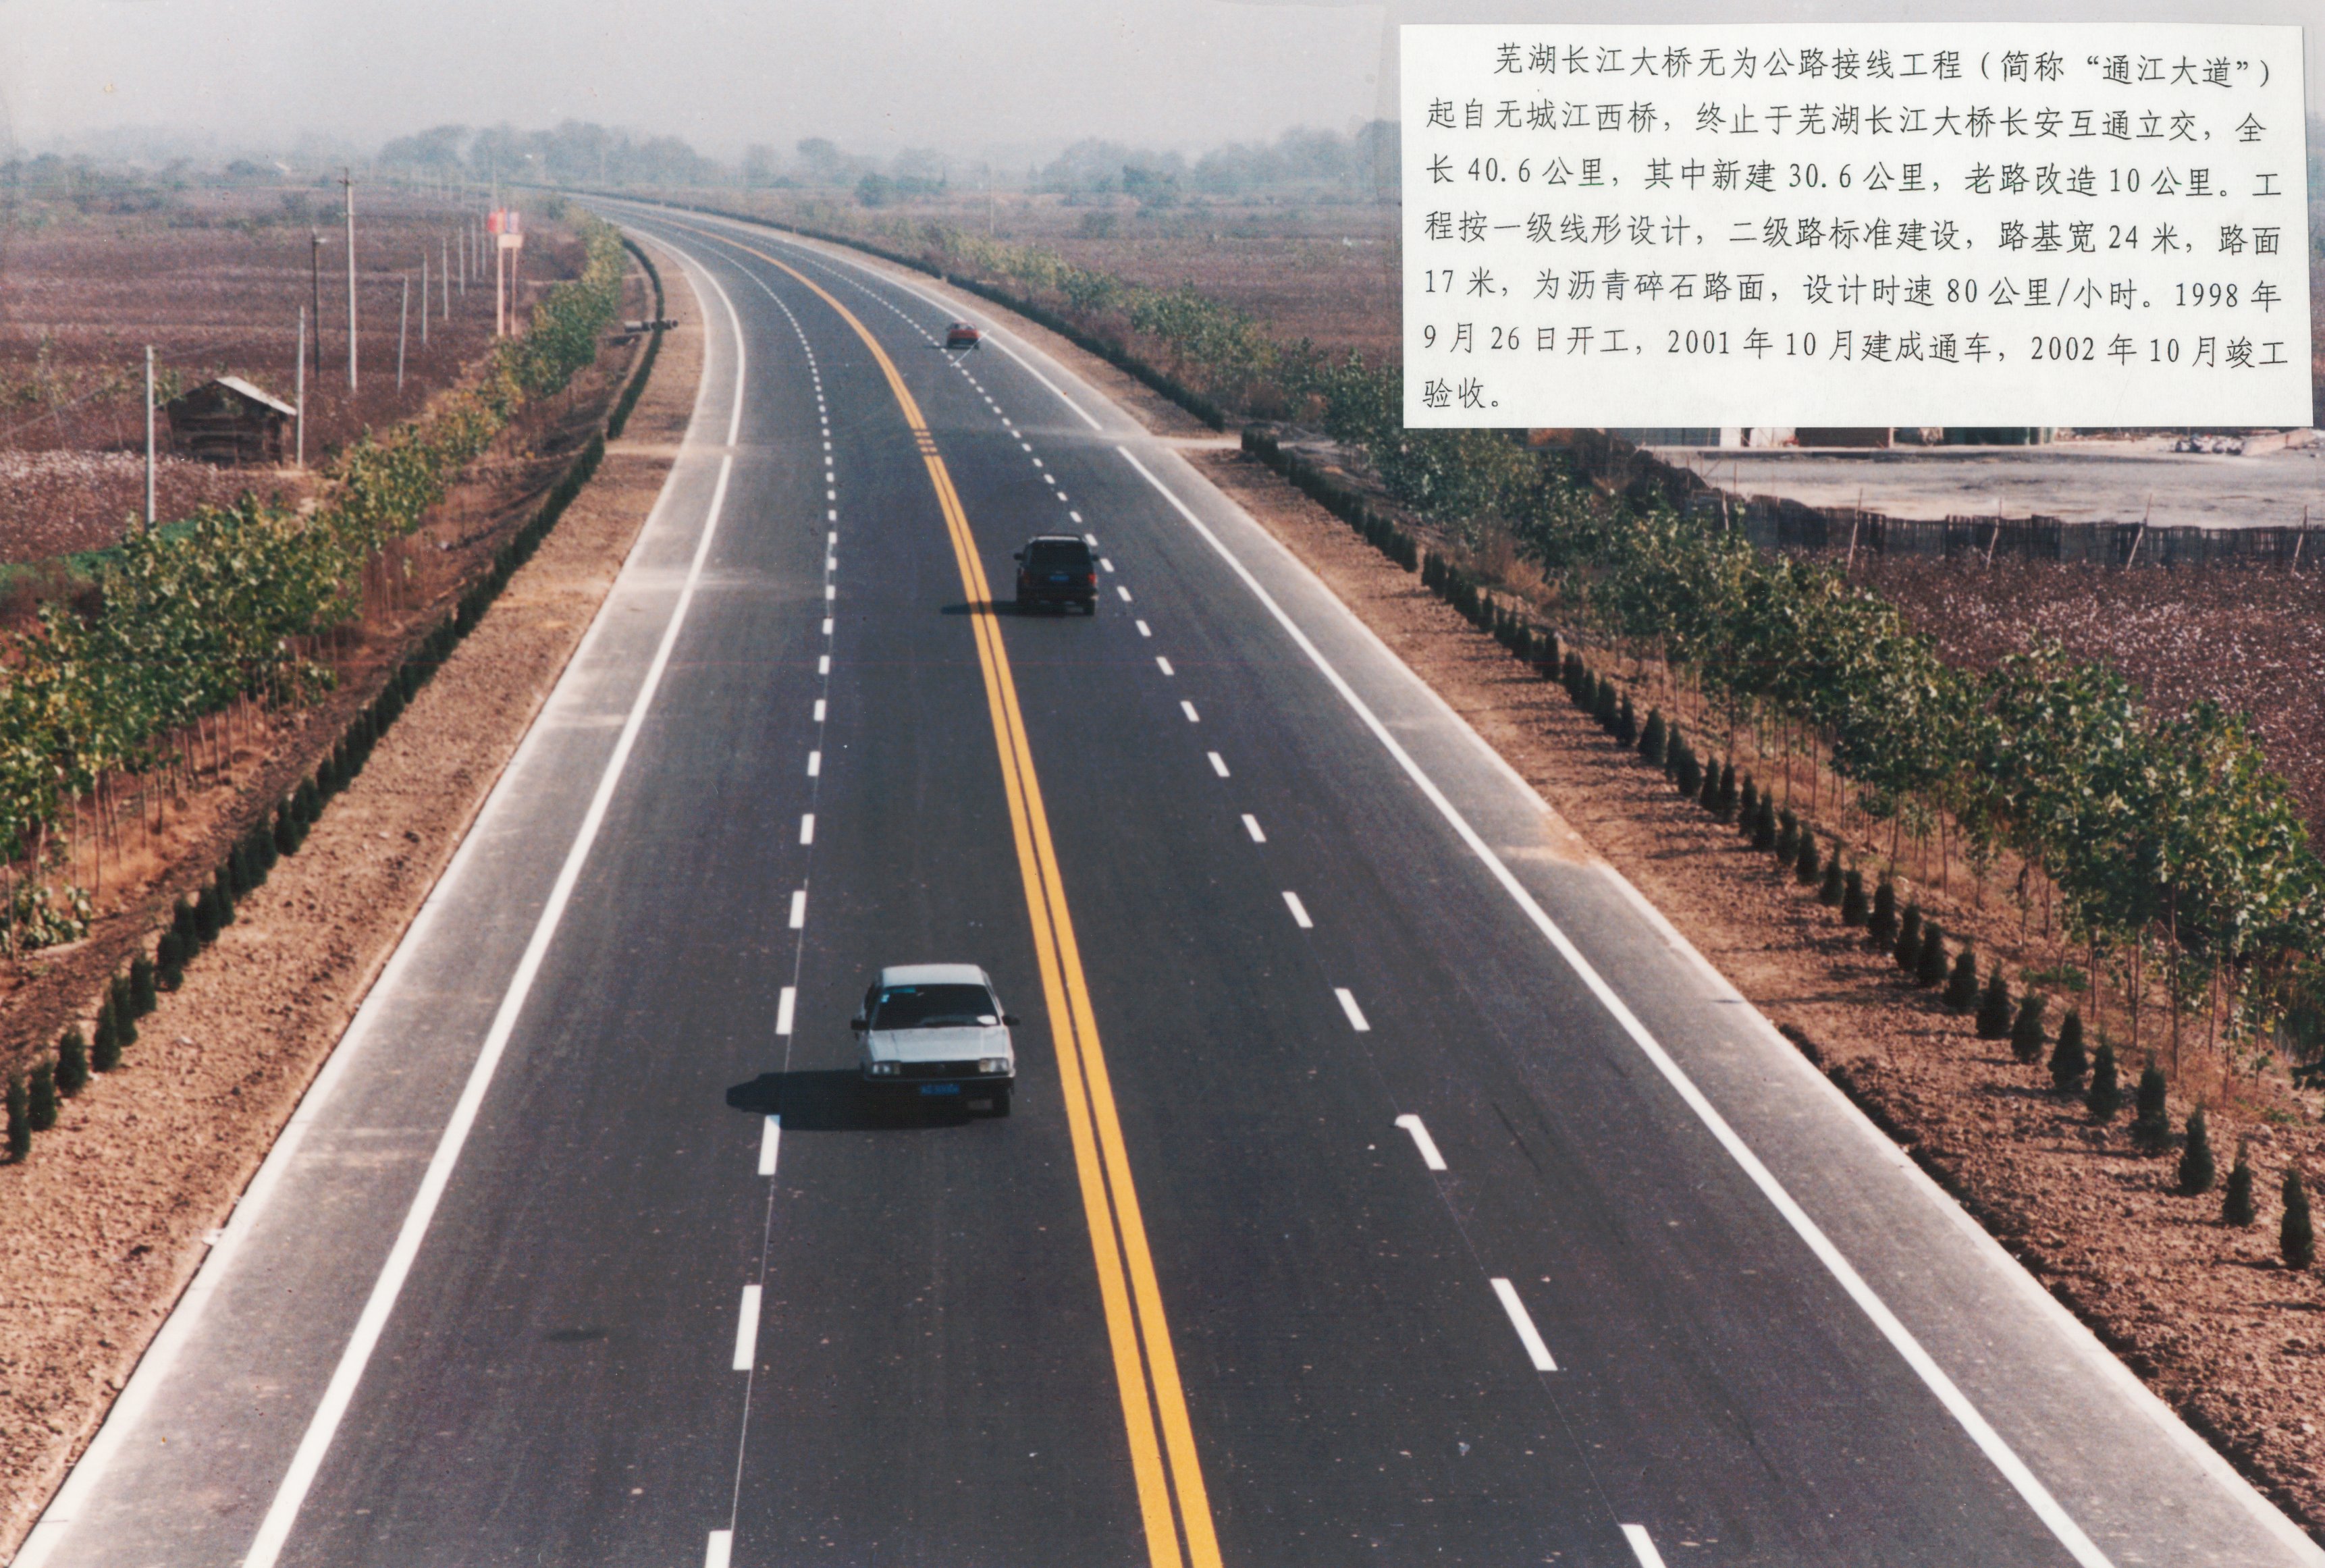 公司承建的无为通江大道沥青路面工程